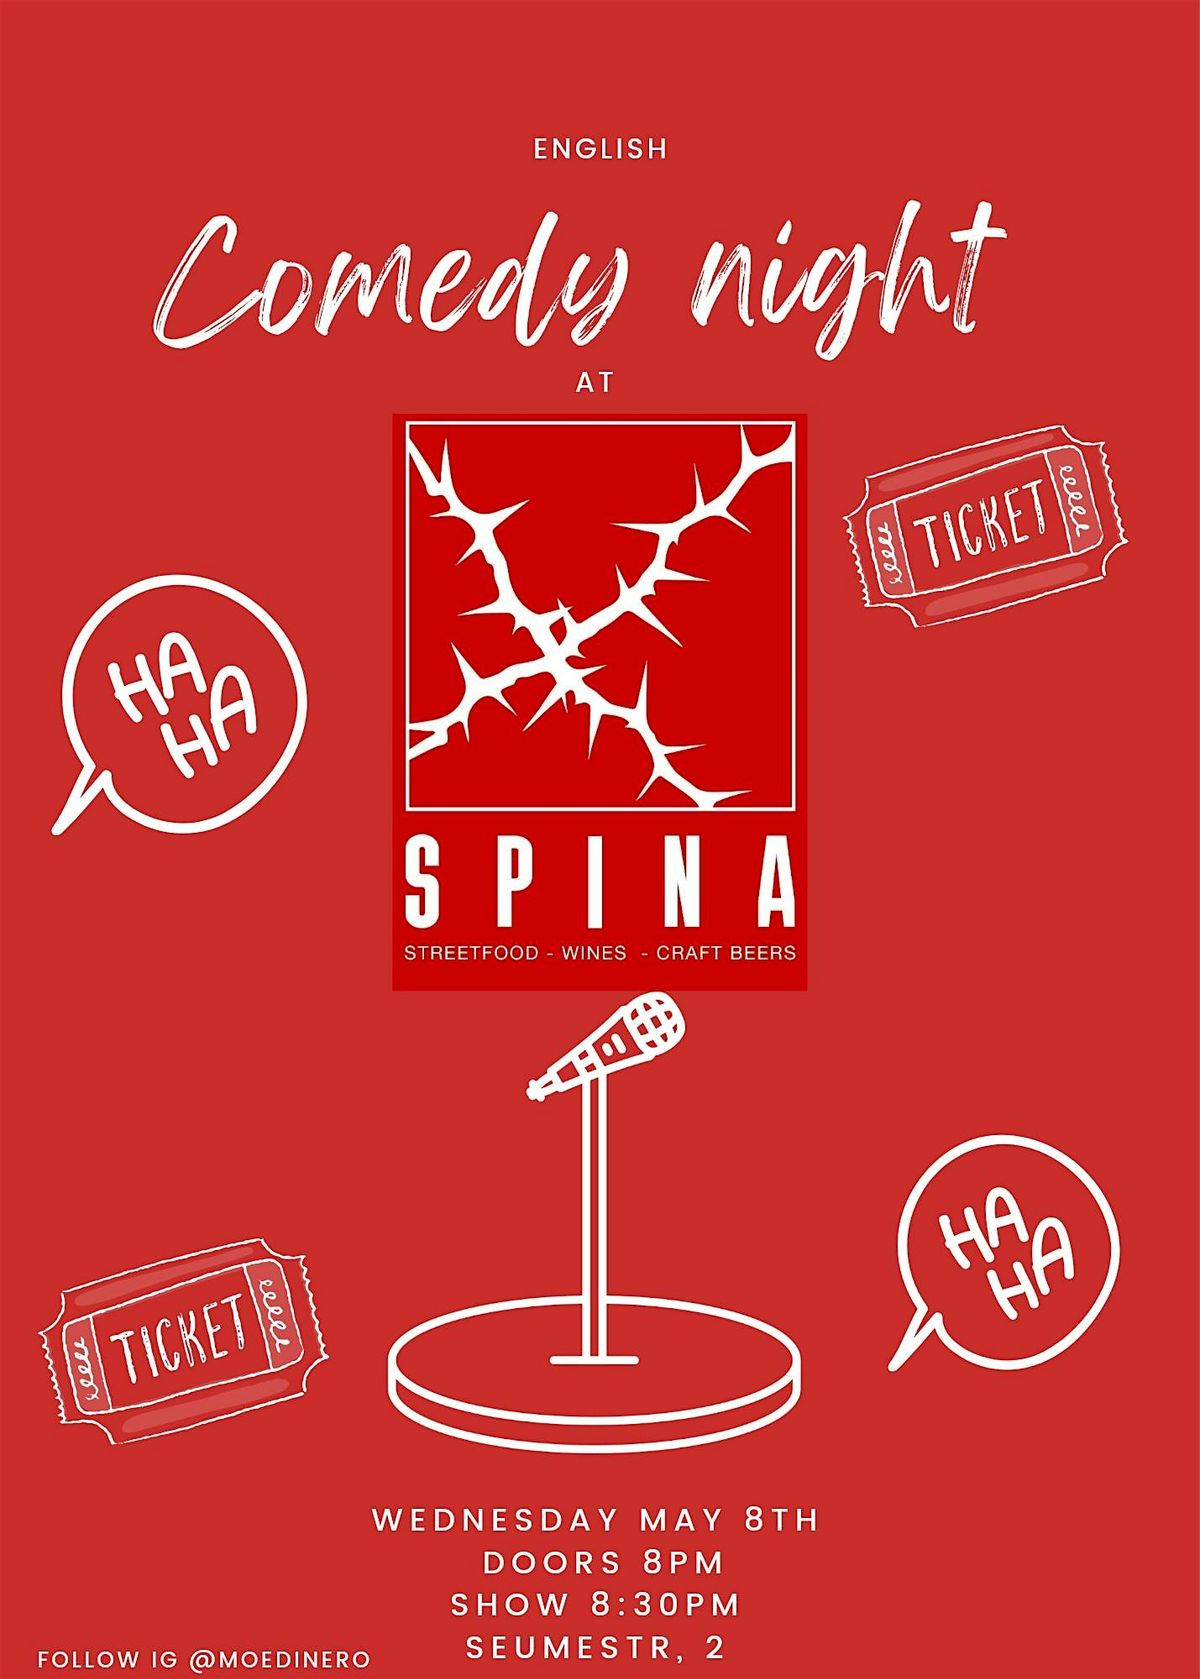 Comedy night at Spina